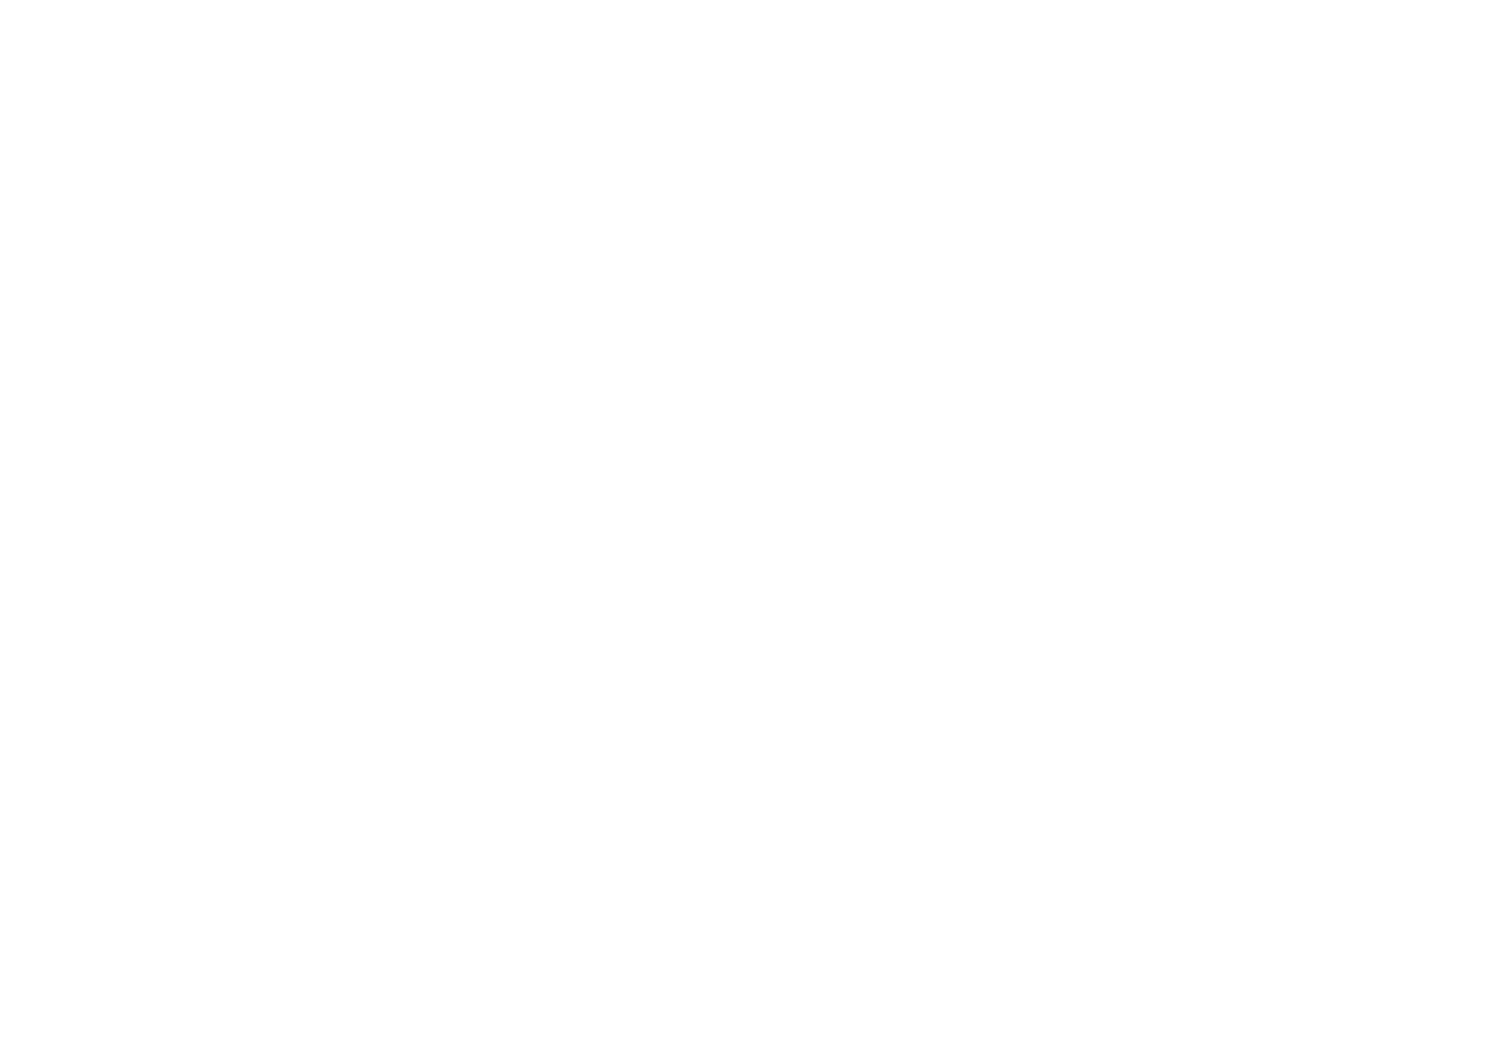 Céline Dupuy